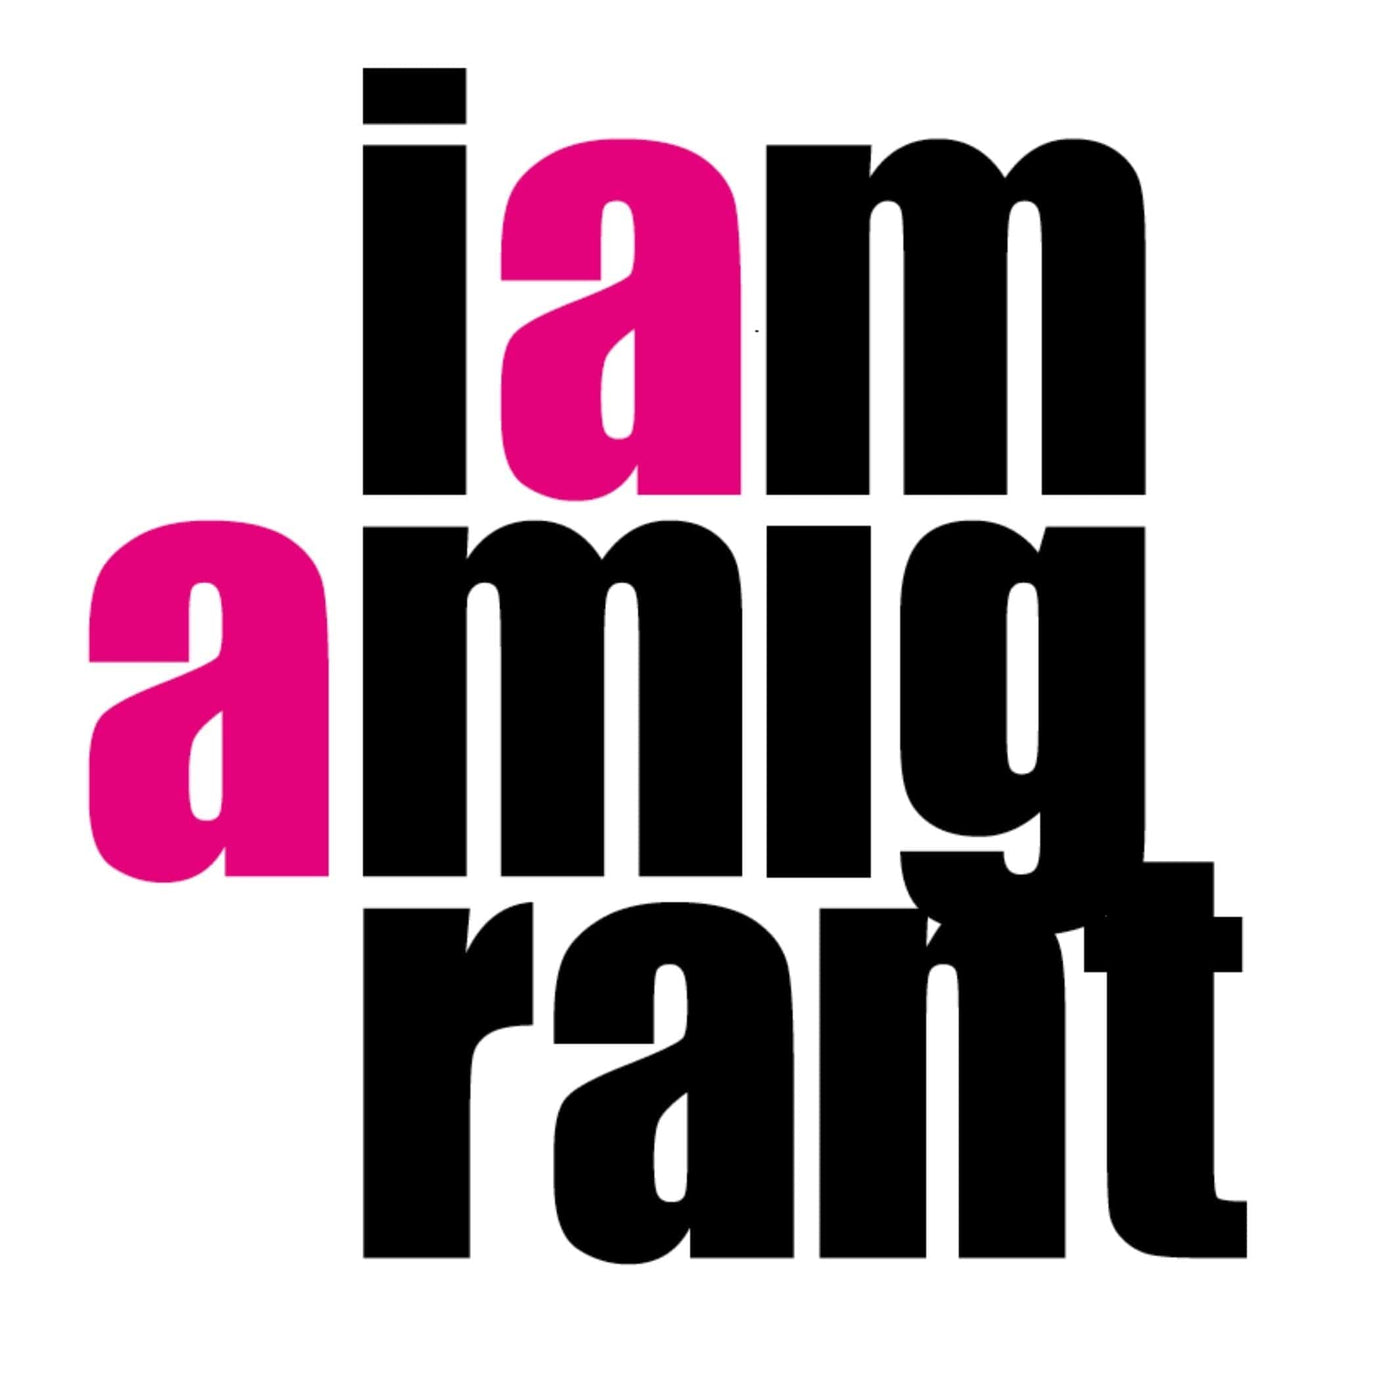 Coaster - I Am a Migrant